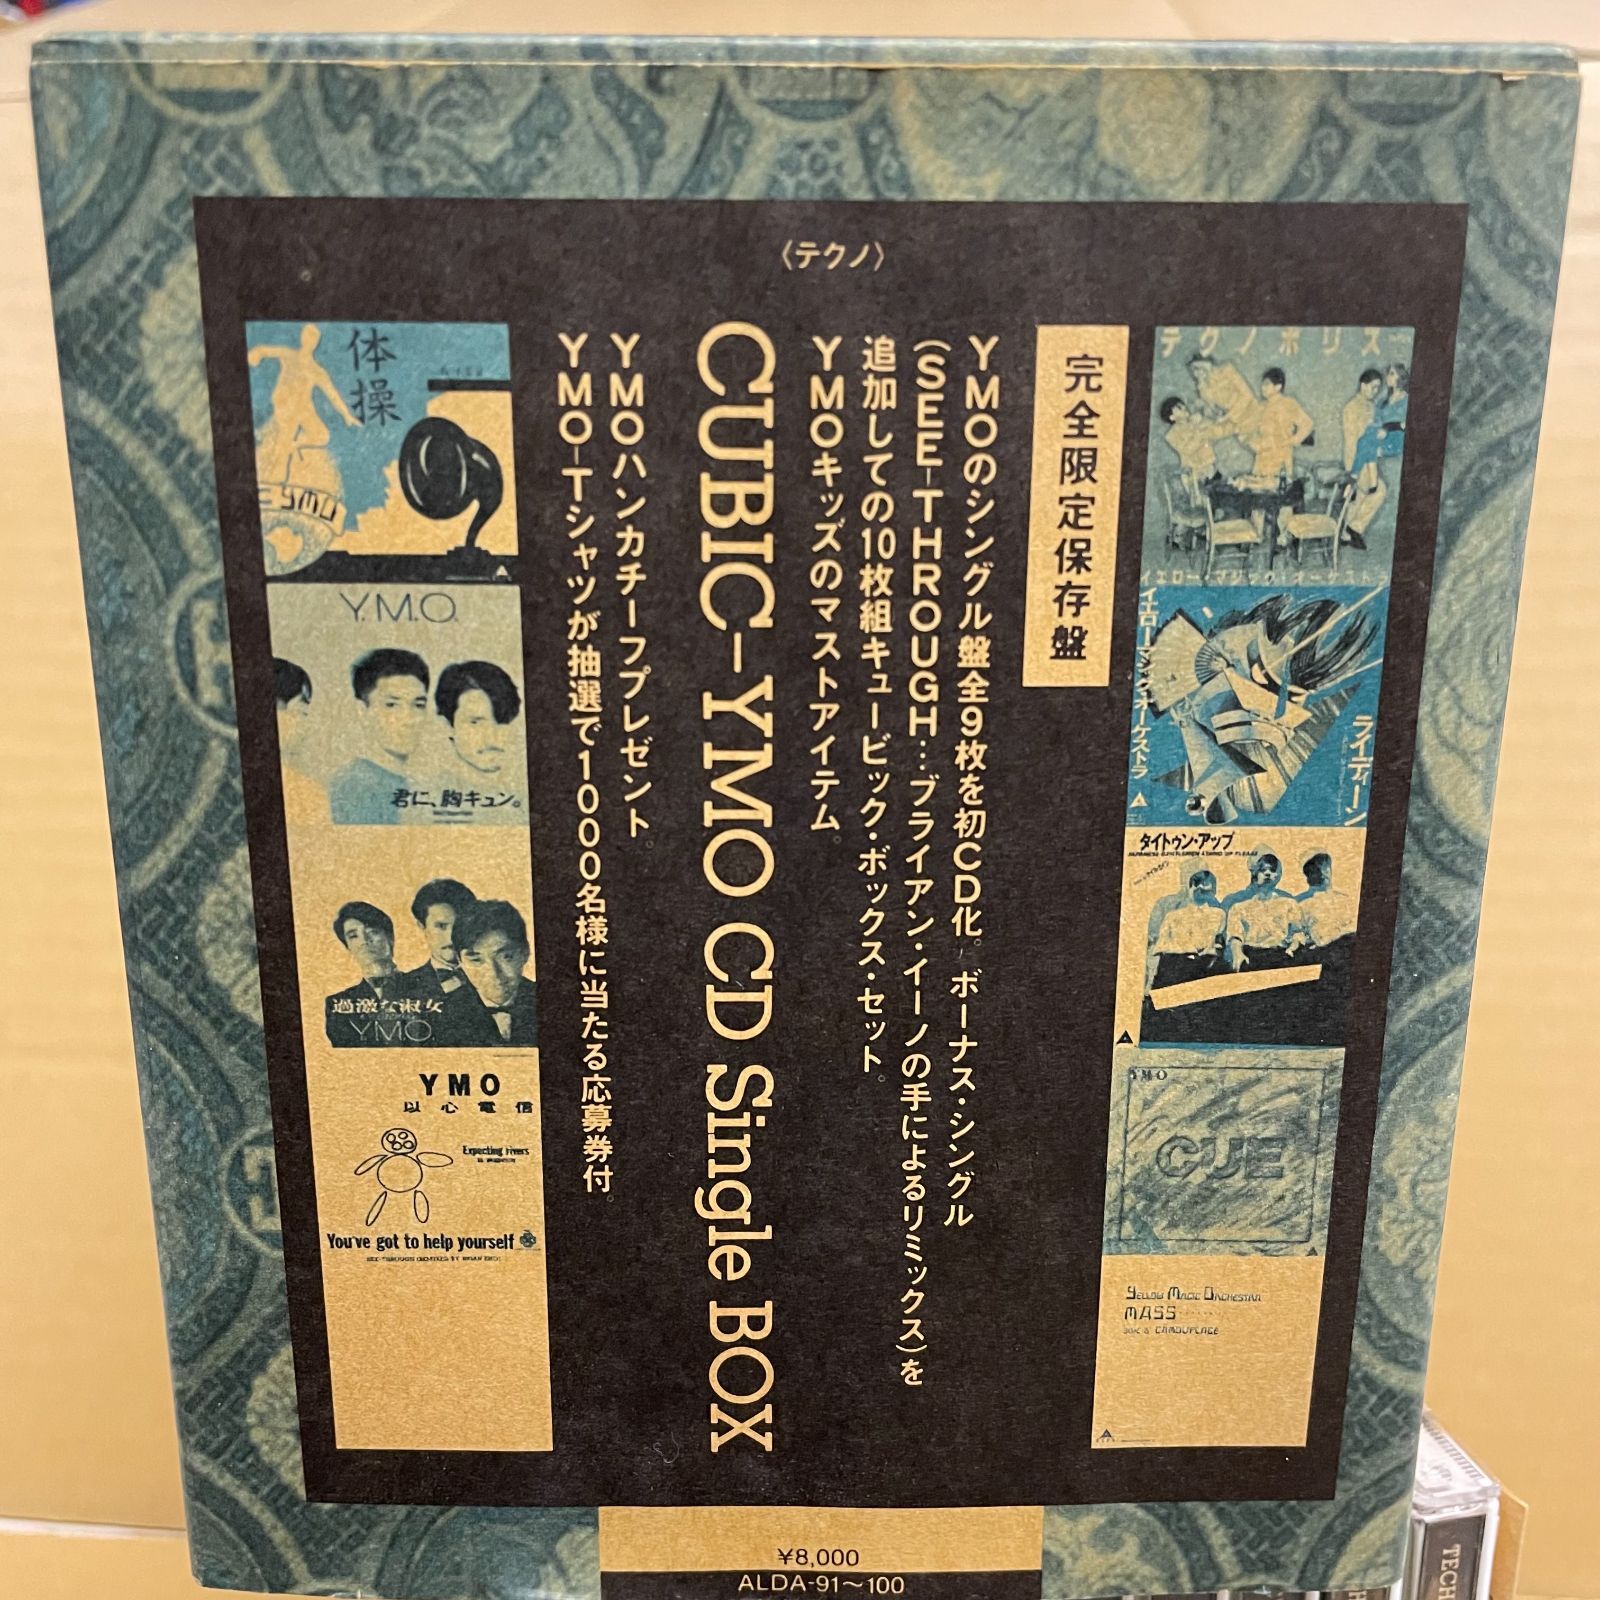 YMO CDシングルBOX CUBIC イエローマジックオーケストラ 細野晴臣